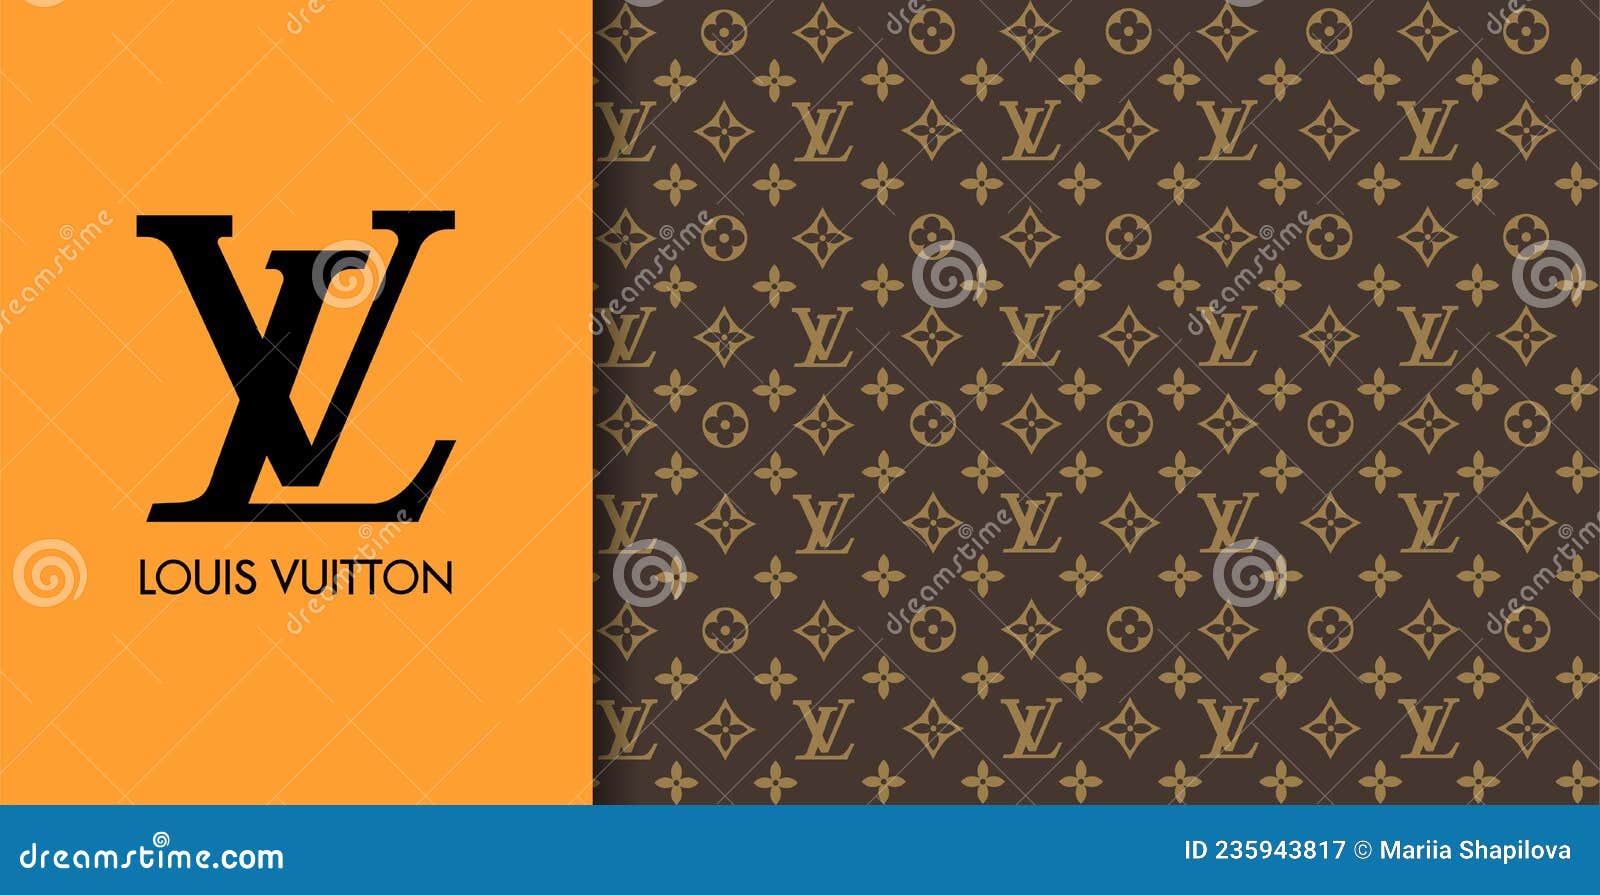 Louis Vuitton White Pattern Stock Illustrations – 4 Louis Vuitton White  Pattern Stock Illustrations, Vectors & Clipart - Dreamstime